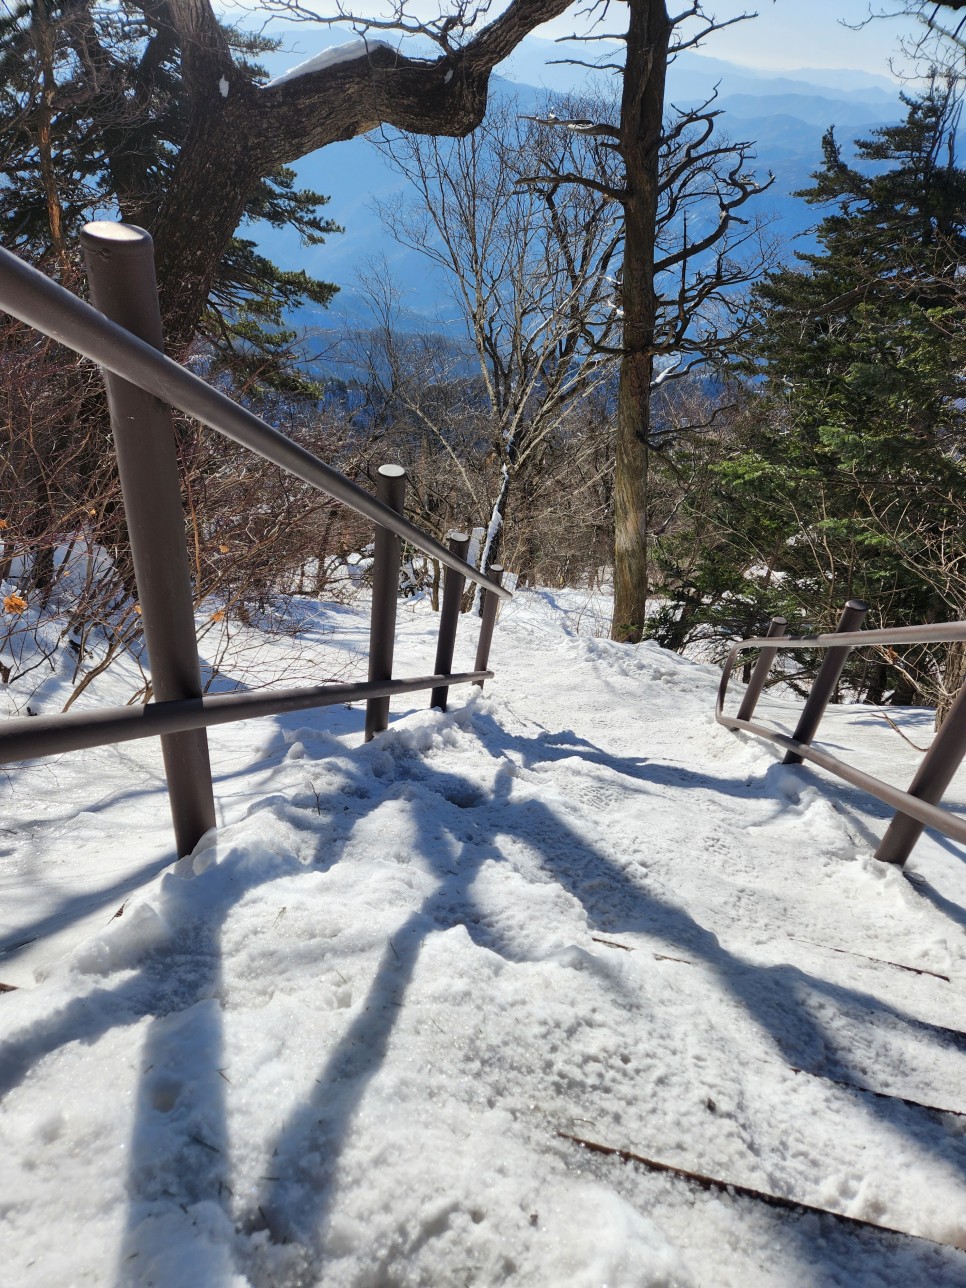 겨울 등산 - 설악산 오색코스는 얼마나 어려울까?